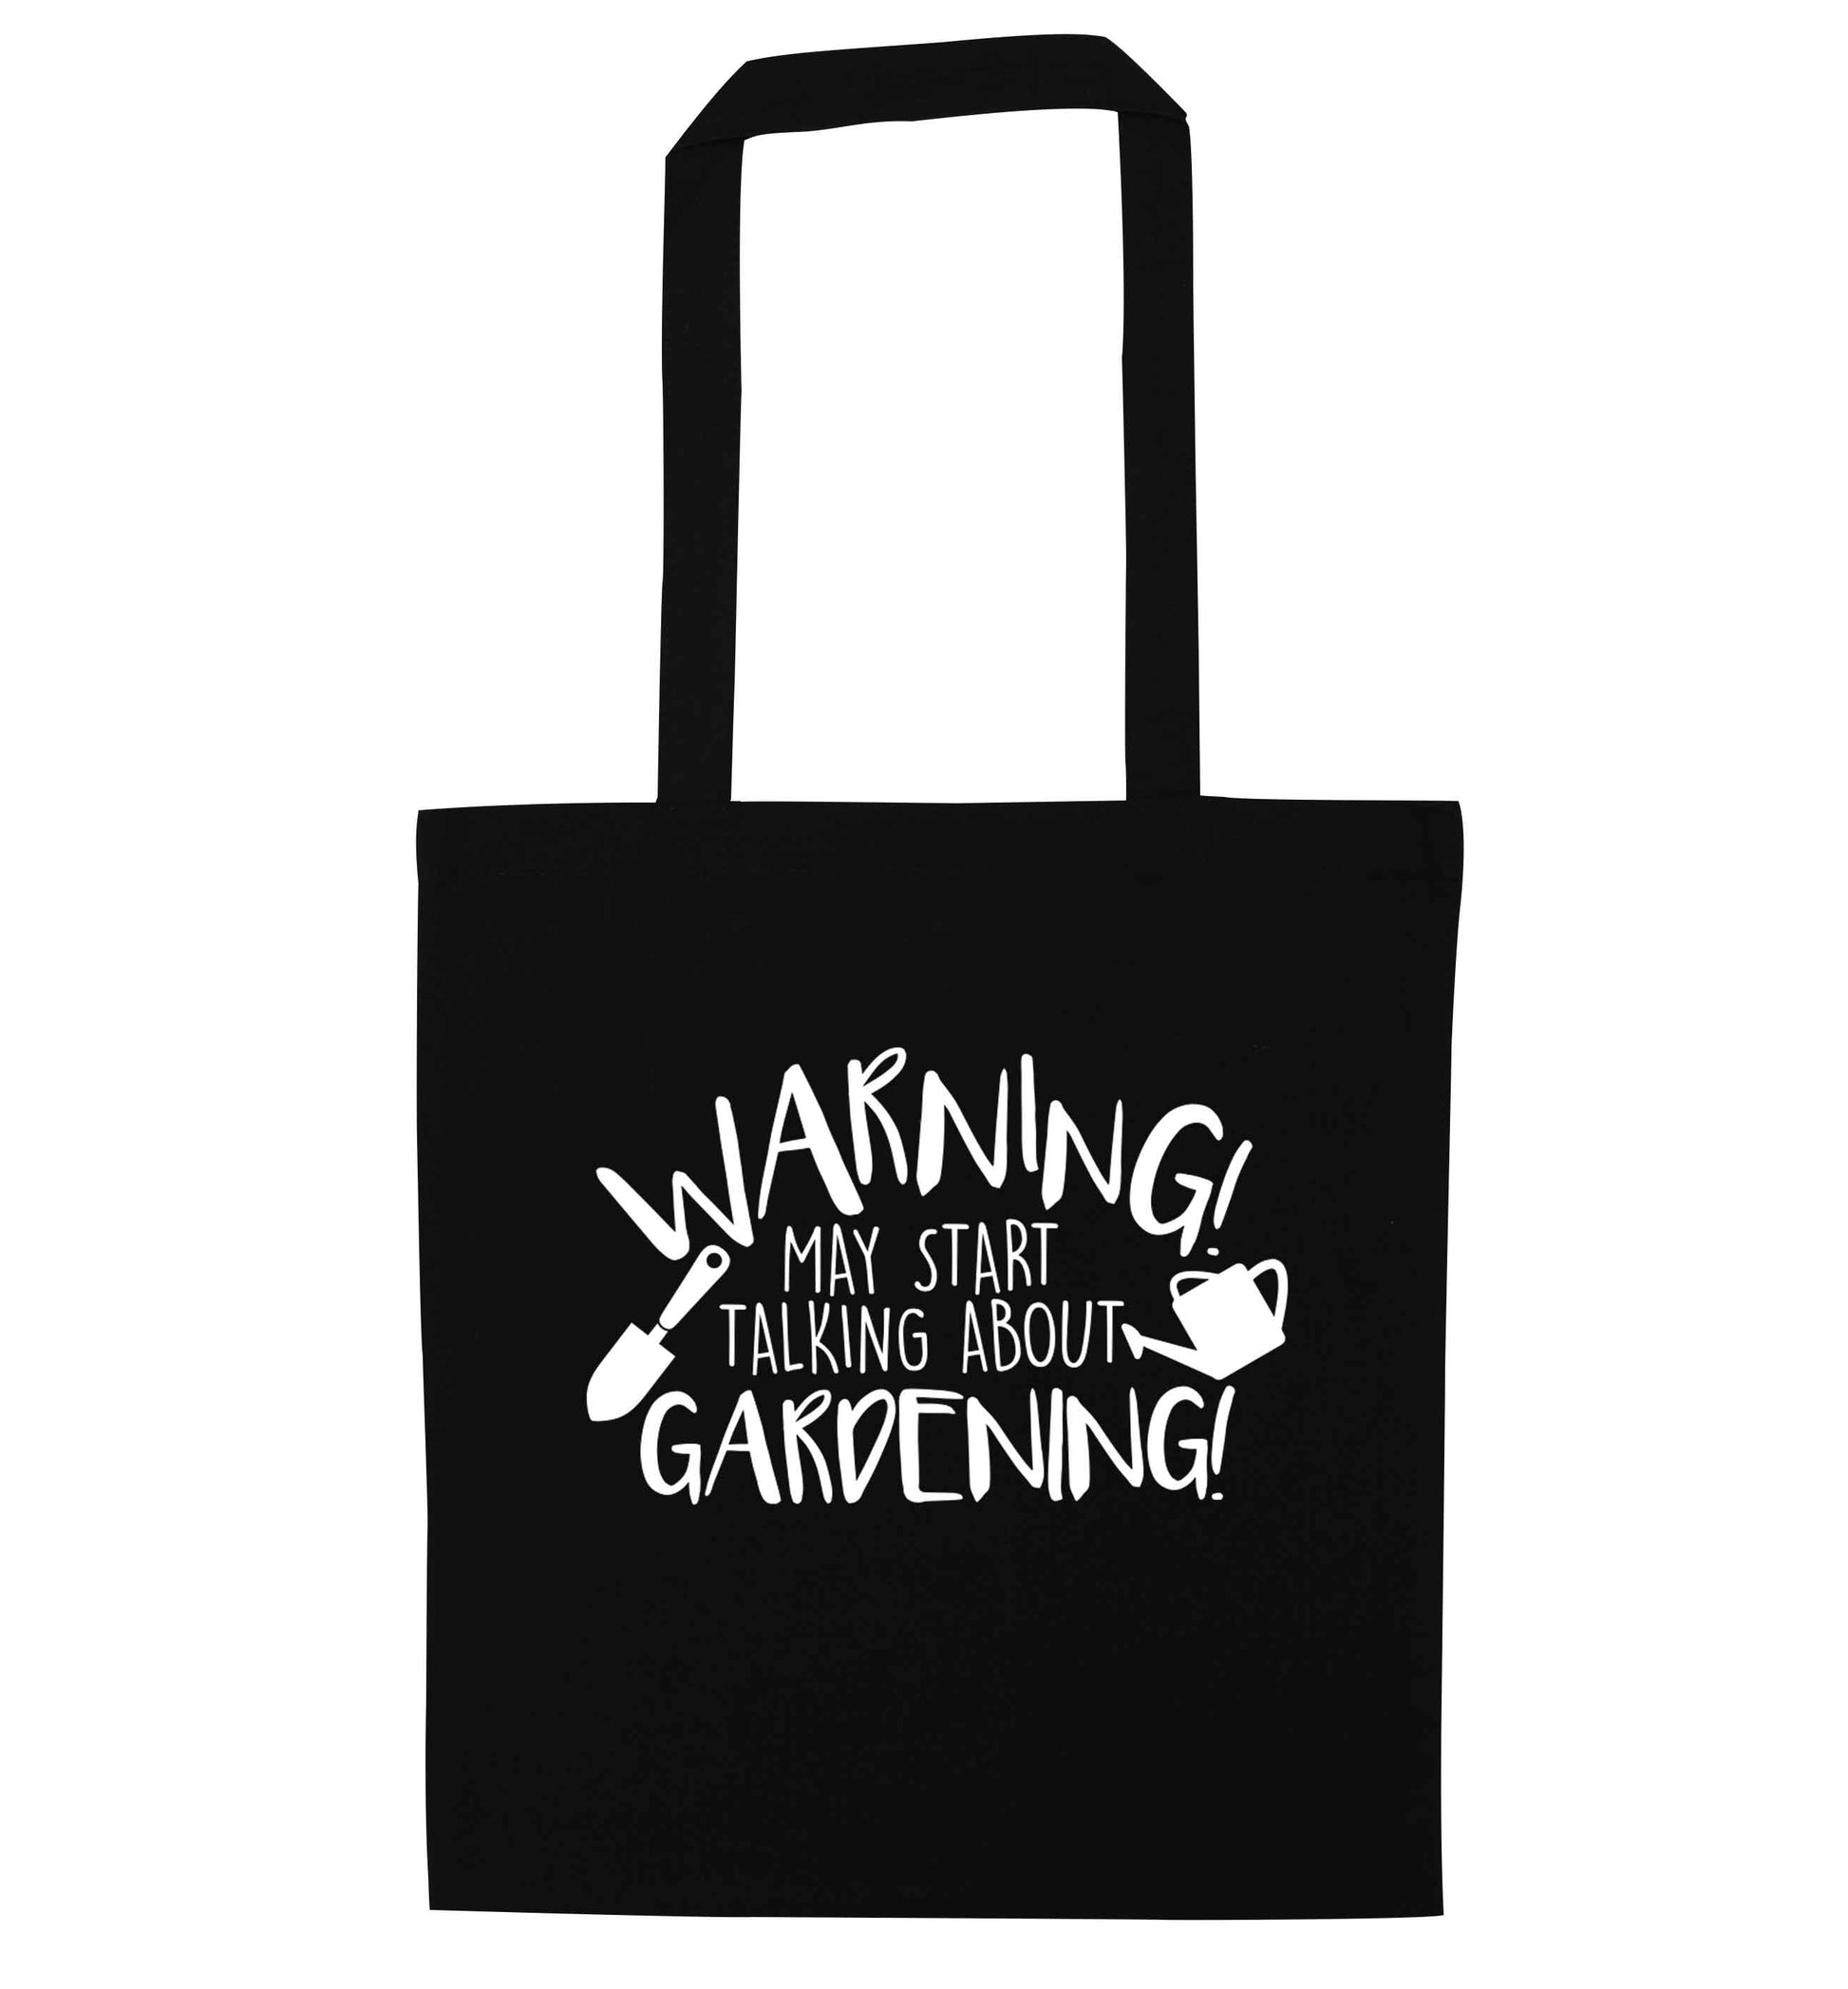 Warning may start talking about gardening black tote bag